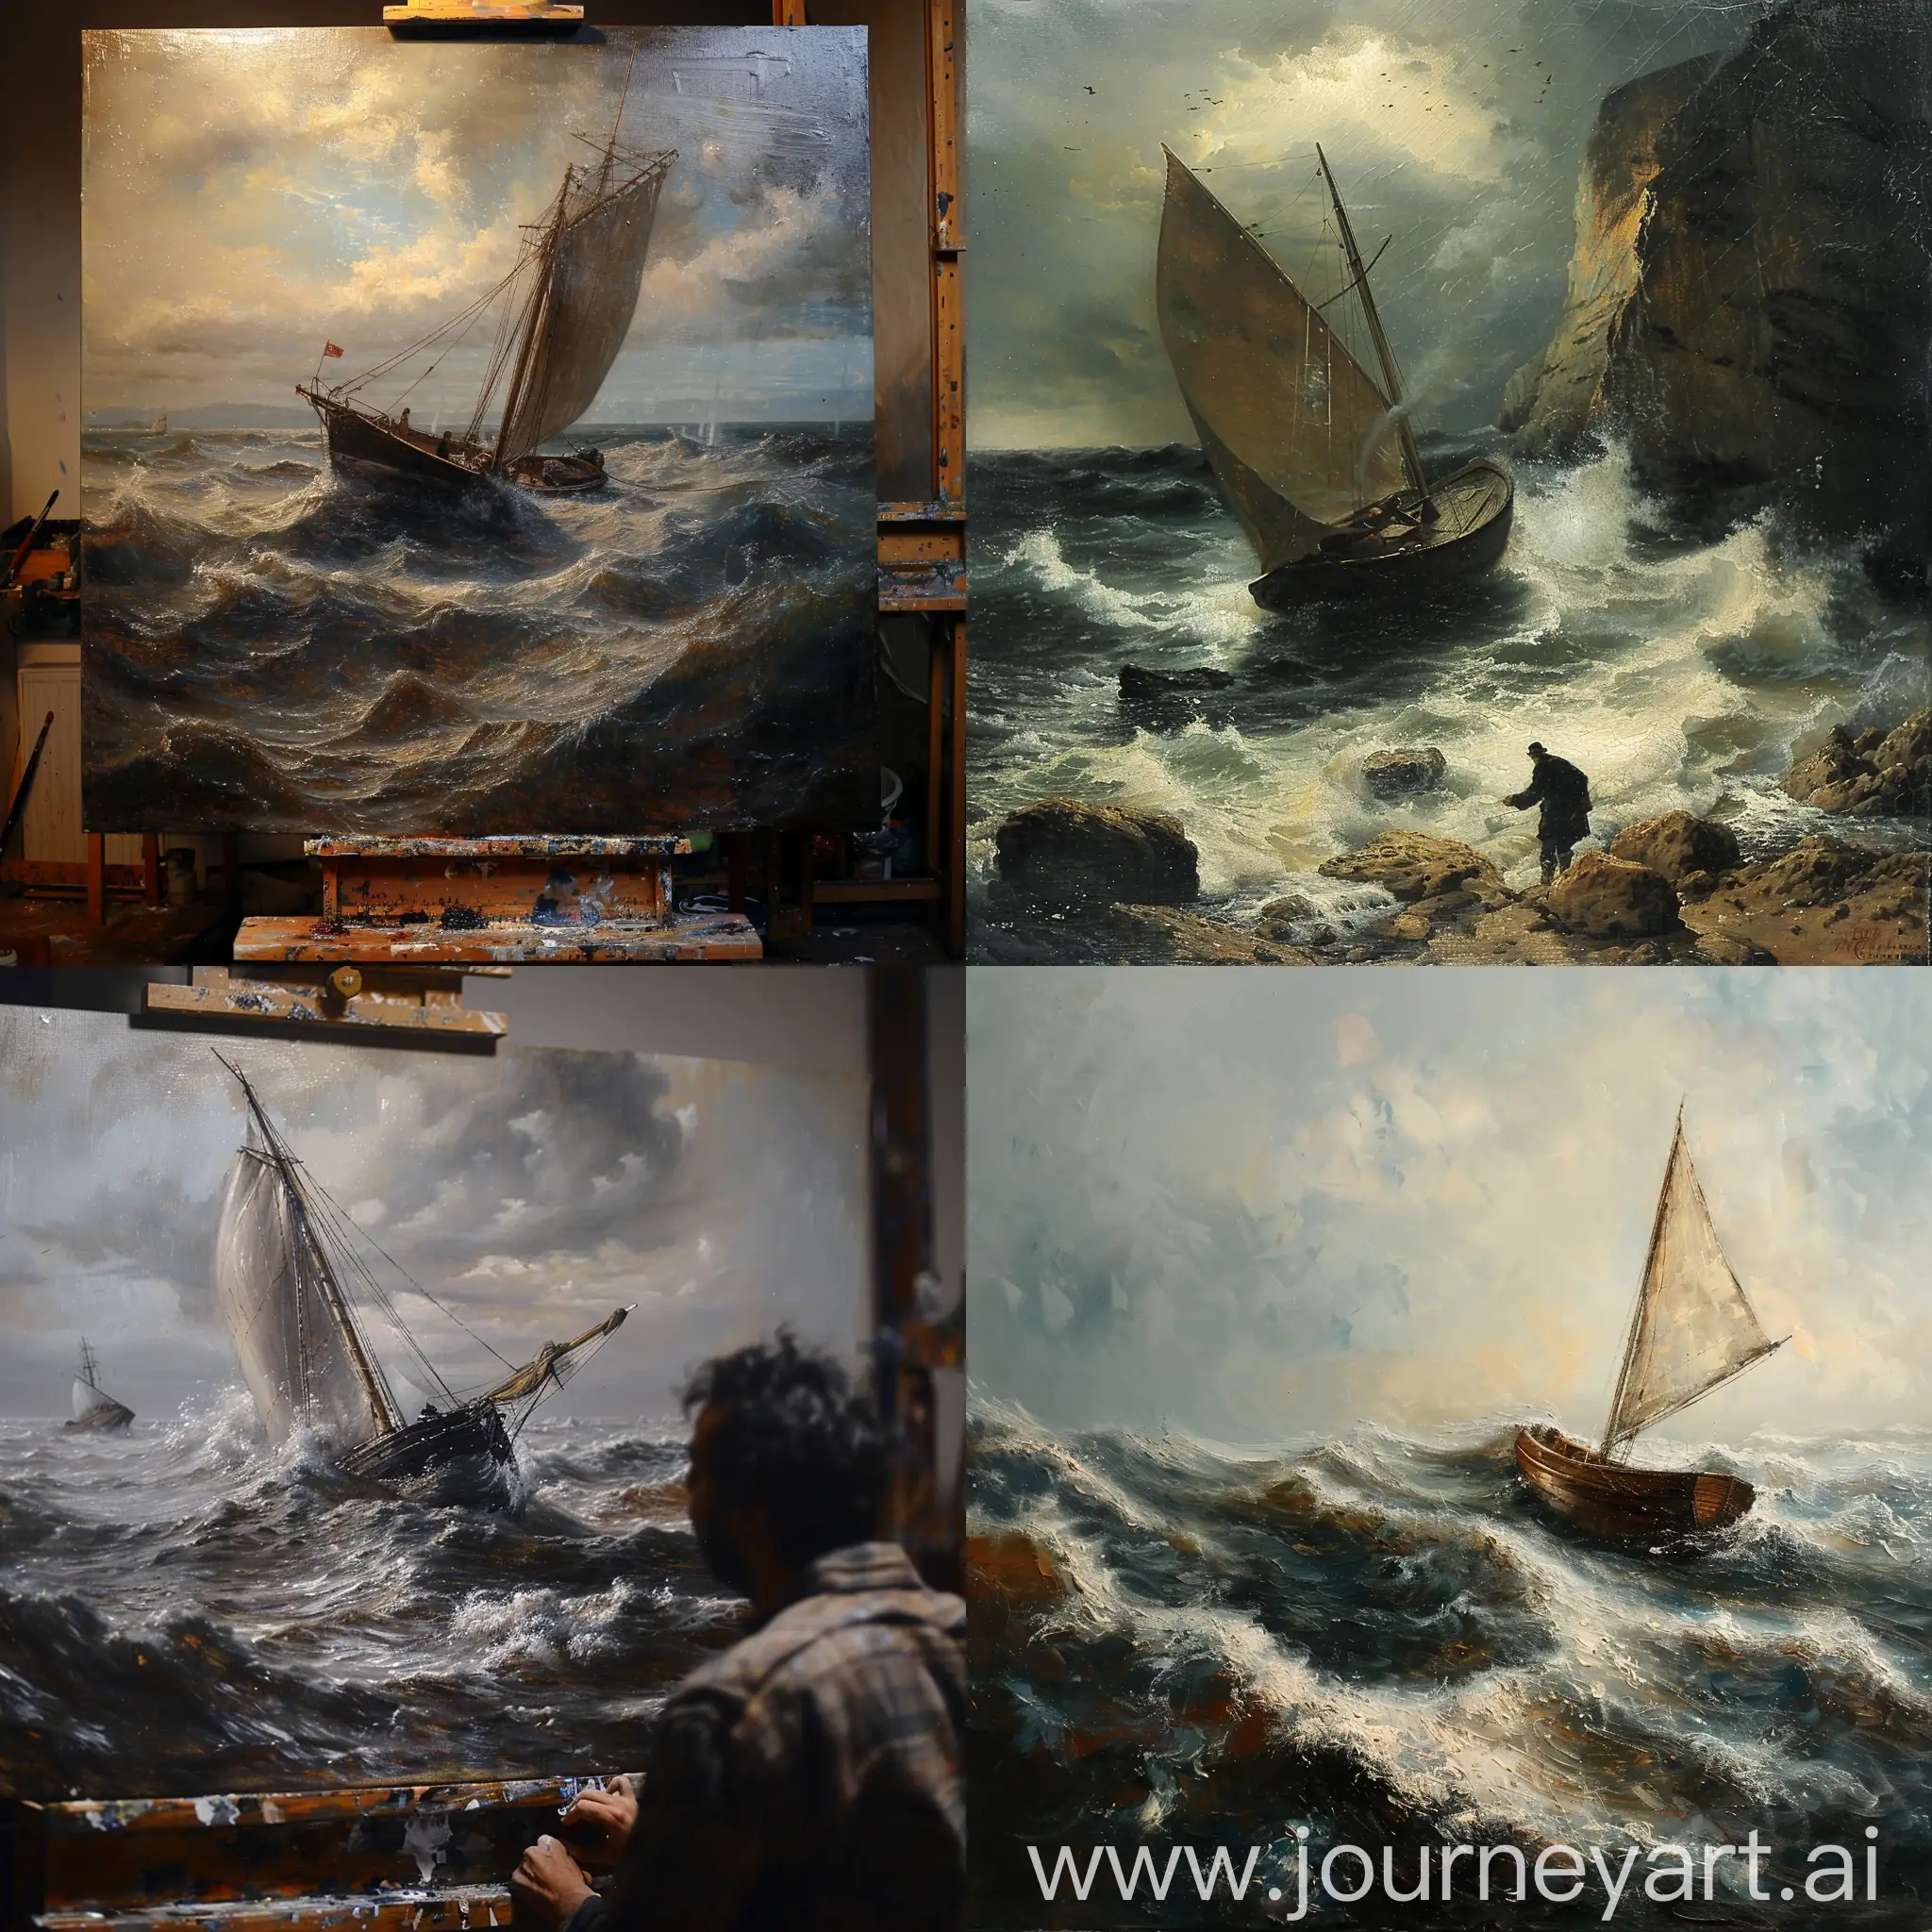 El estudio de un pintor, un cuadro de una marina con fuerte marejada con un barco,  el barco sale literalmente del cuadro como si fuera real, en escorzo